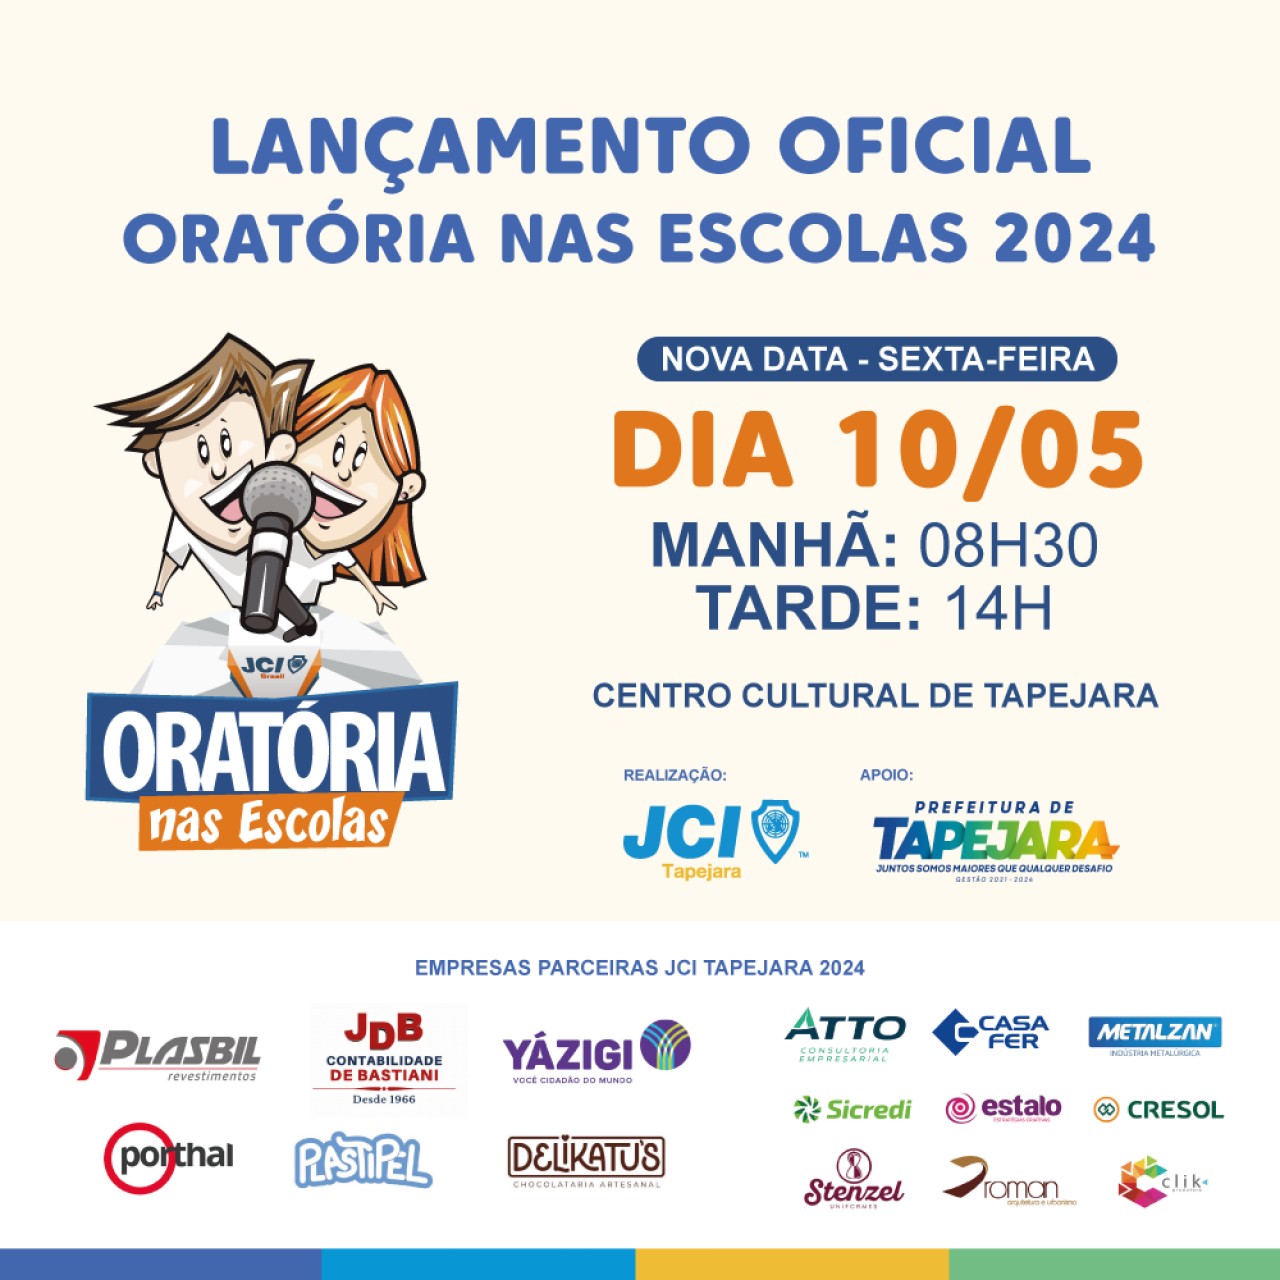 JCI Tapejara confirma nova data para o lançamento do Projeto Oratória nas Escolas 2024: 10 de maio